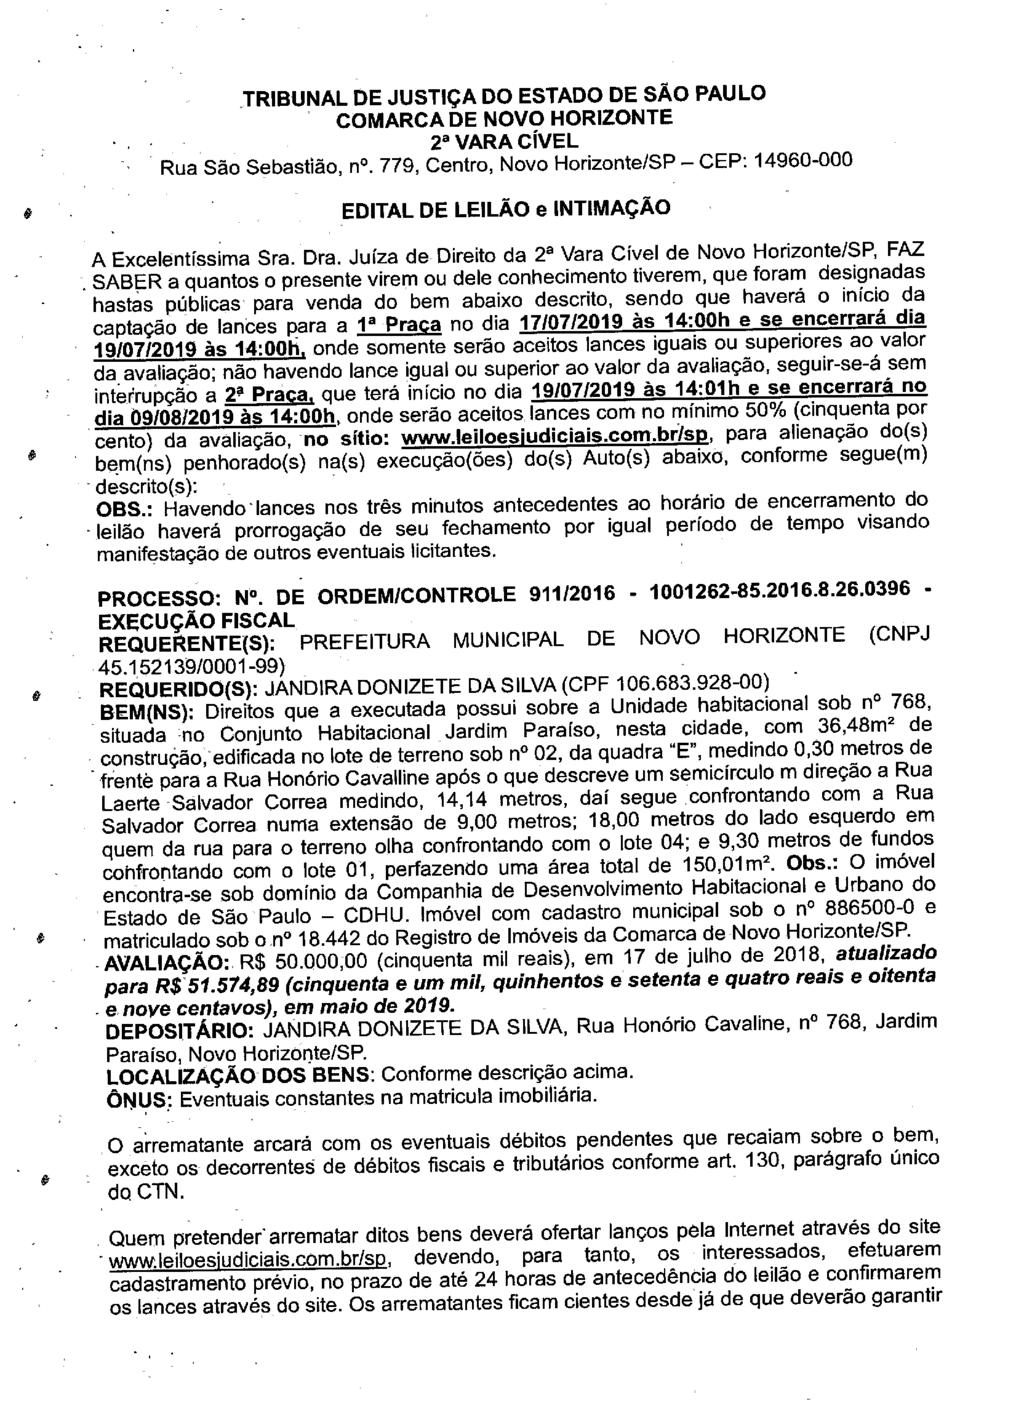 fls. 80 Este documento é cópia do original, assinado digitalmente por LUZIA REGIS DE OLIVEIRA DUARTE, liberado nos autos em 19/06/2019 às 13:12.